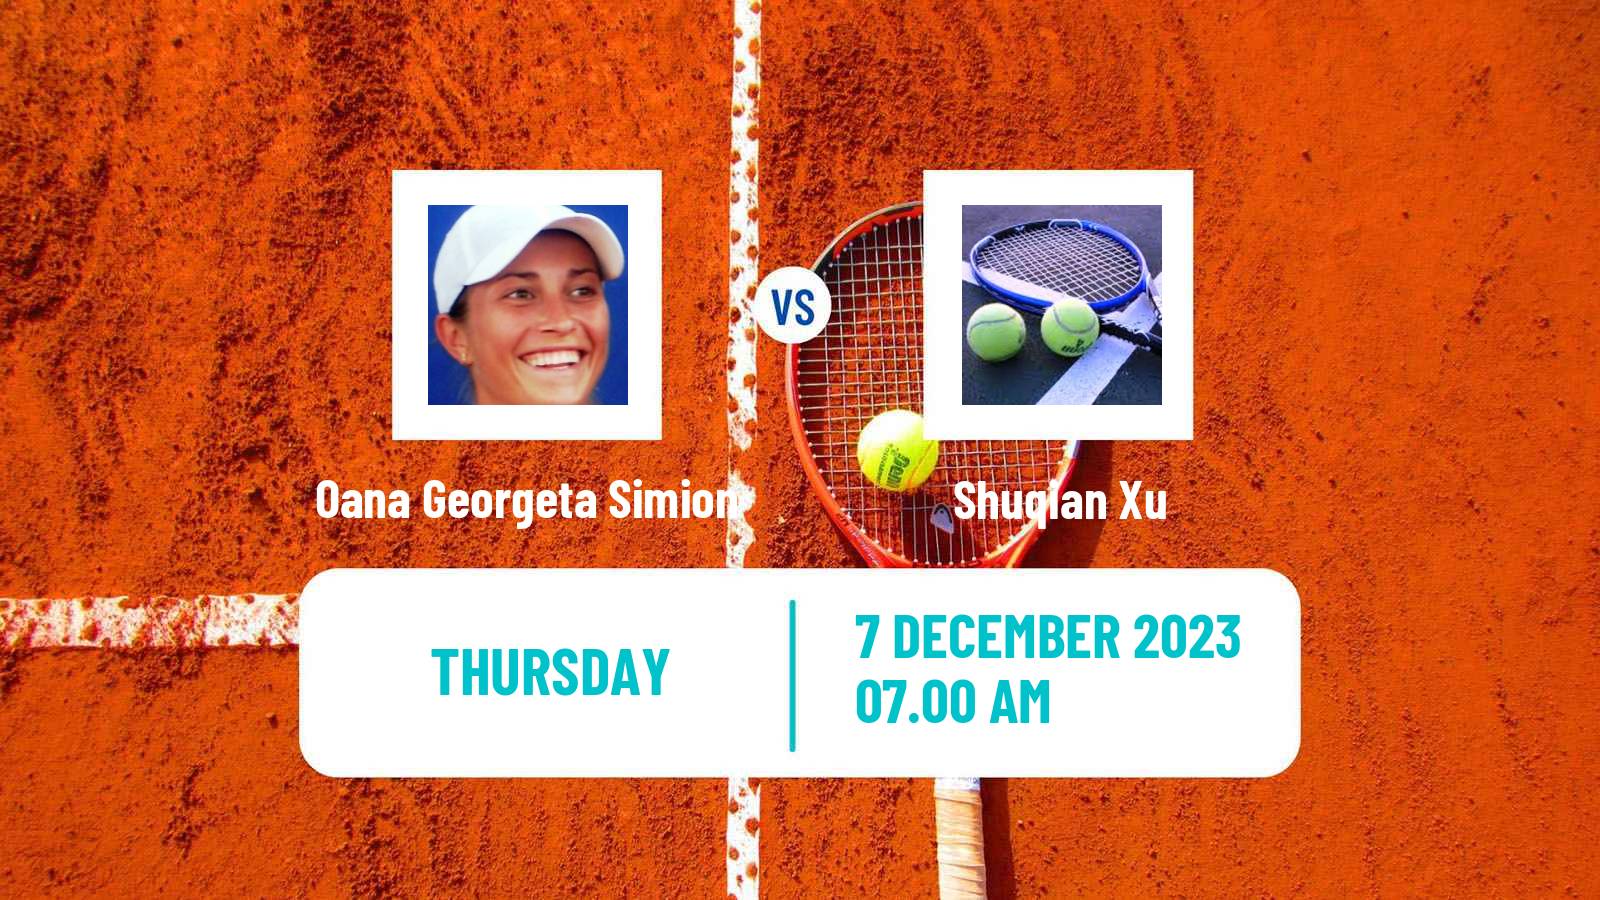 Tennis ITF W15 Valencia 2 Women Oana Georgeta Simion - Shuqian Xu